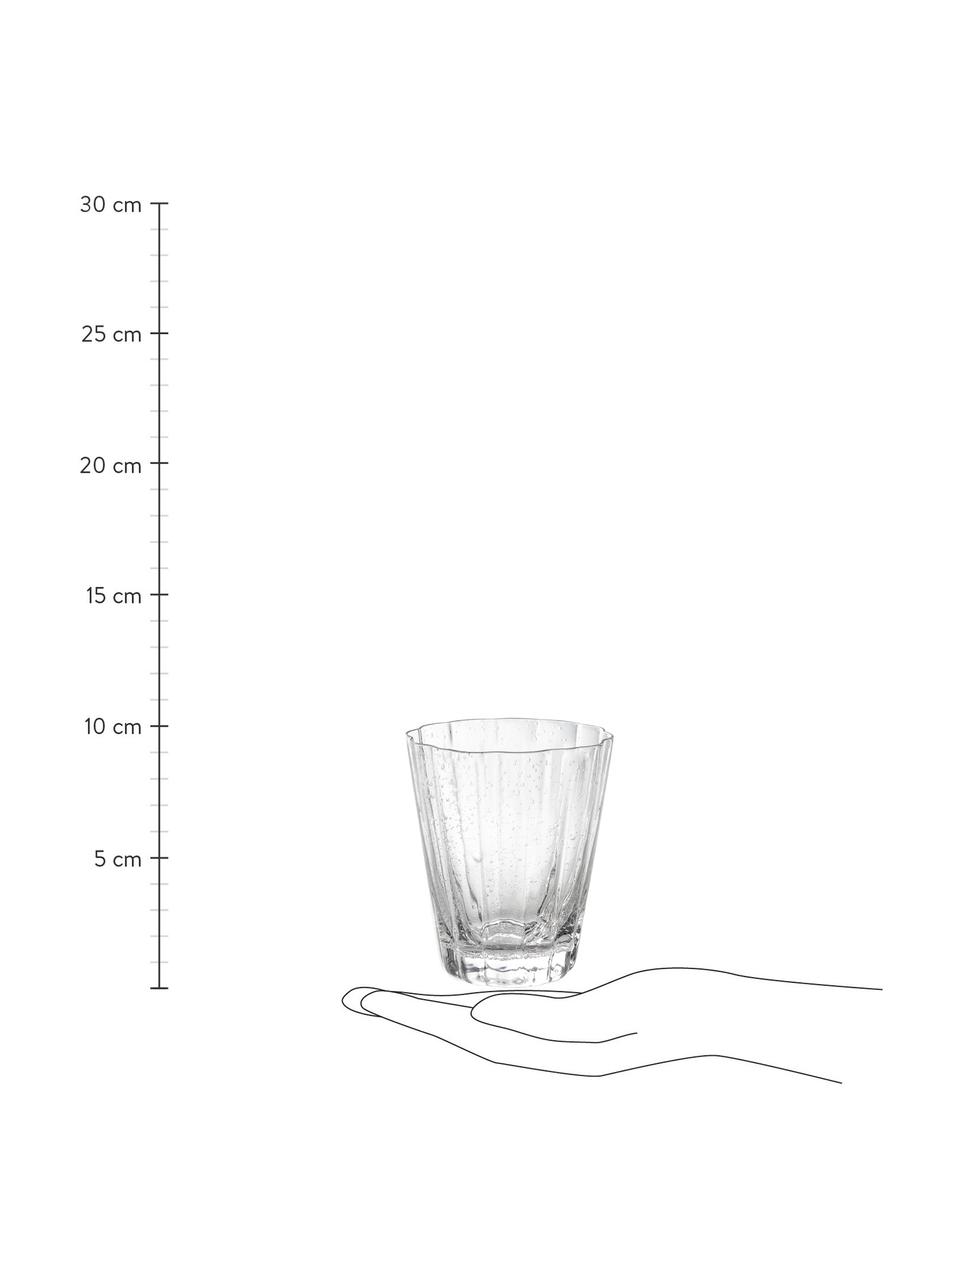 Ručně foukané sklenice na vodu s drážkovanou strukturou Scallop Glasses, 4 ks, Foukané sklo, Transparentní, Ø 8 cm, V 10 cm